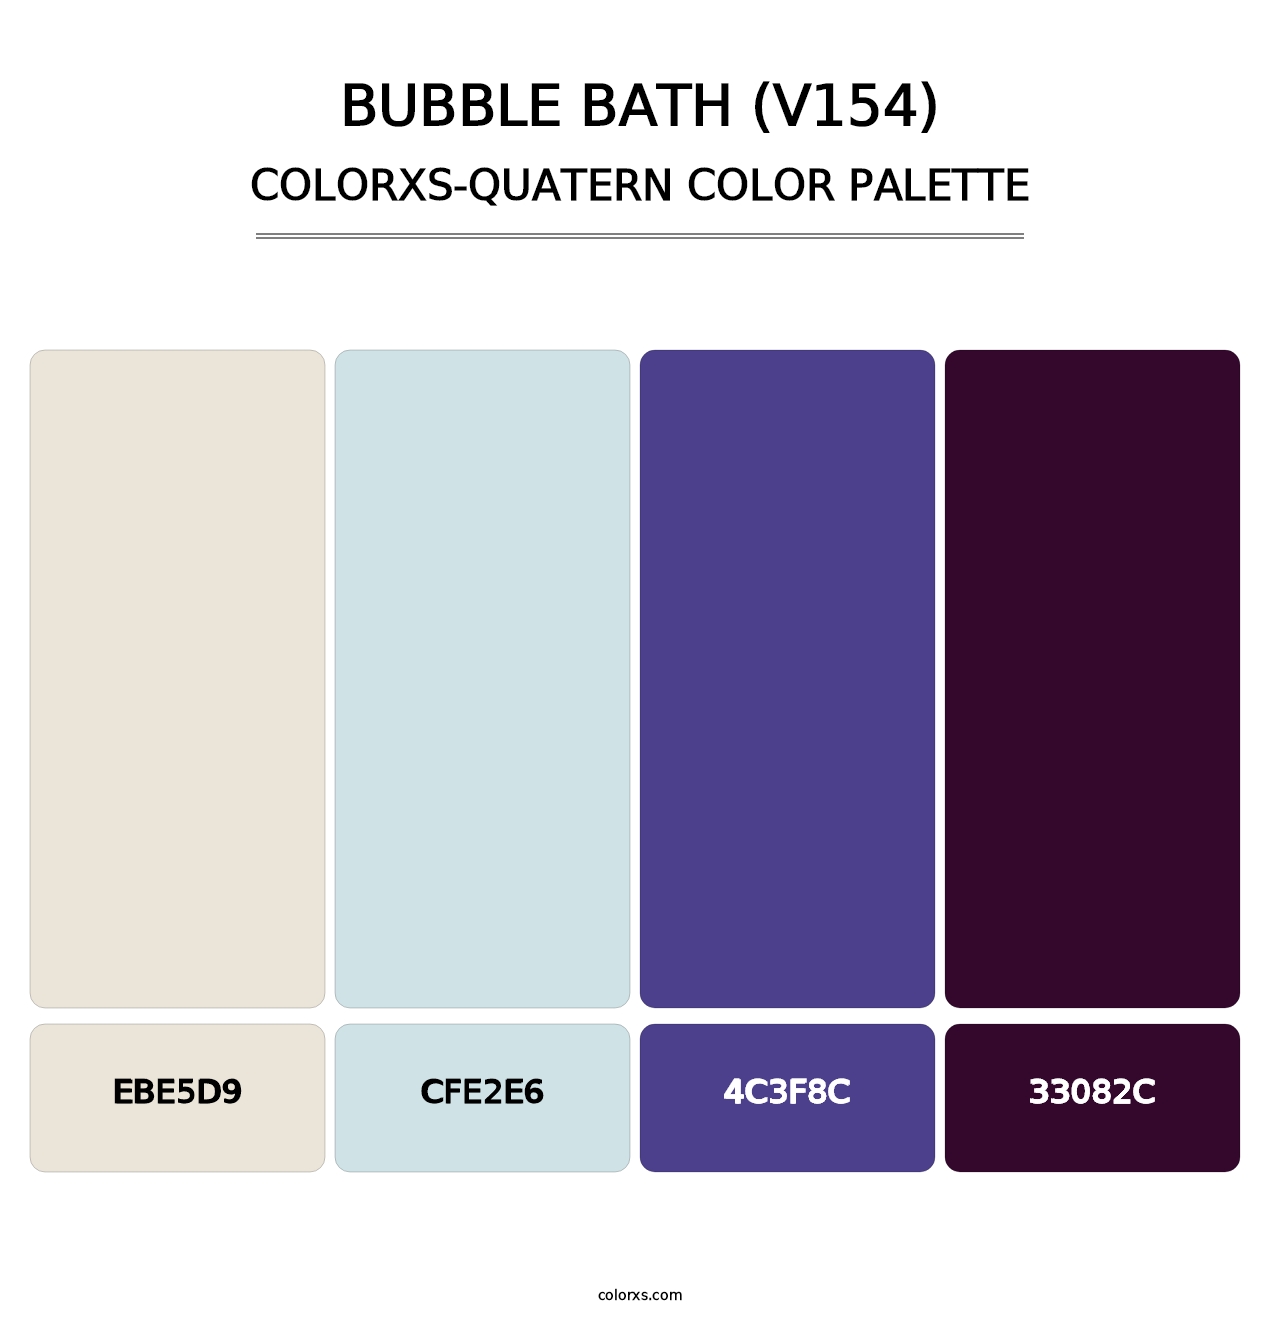 Bubble Bath (V154) - Colorxs Quatern Palette